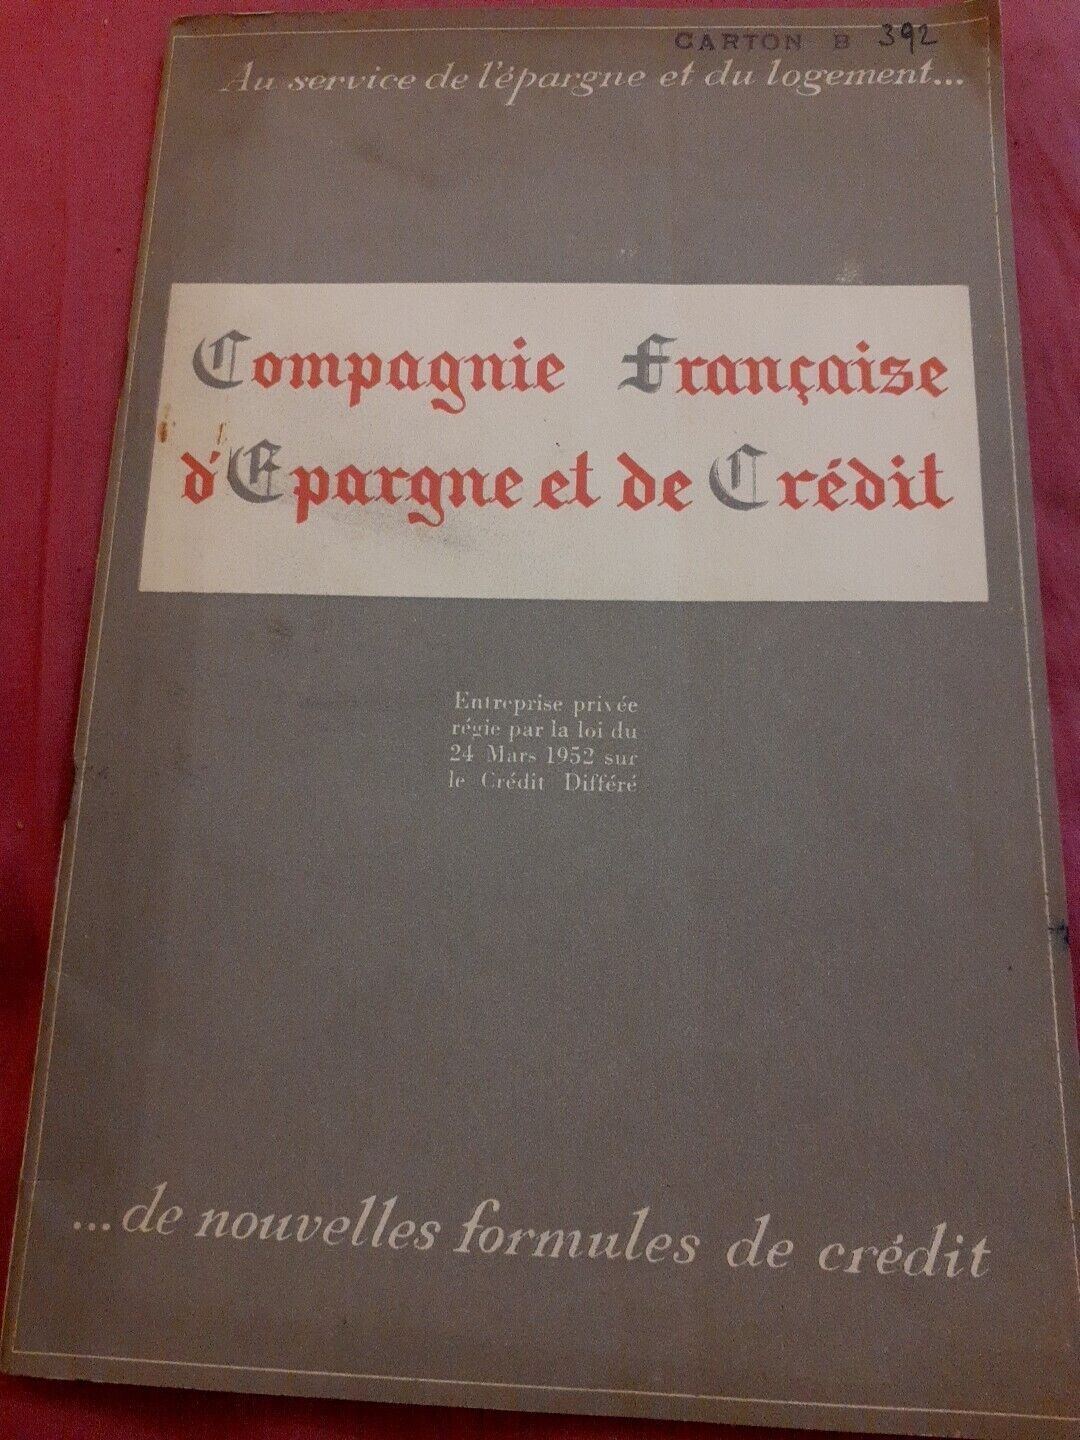 Advertising booklet: COMPANY FRANÇAISE D'EPARGNE ET DE CREDIT, 1952